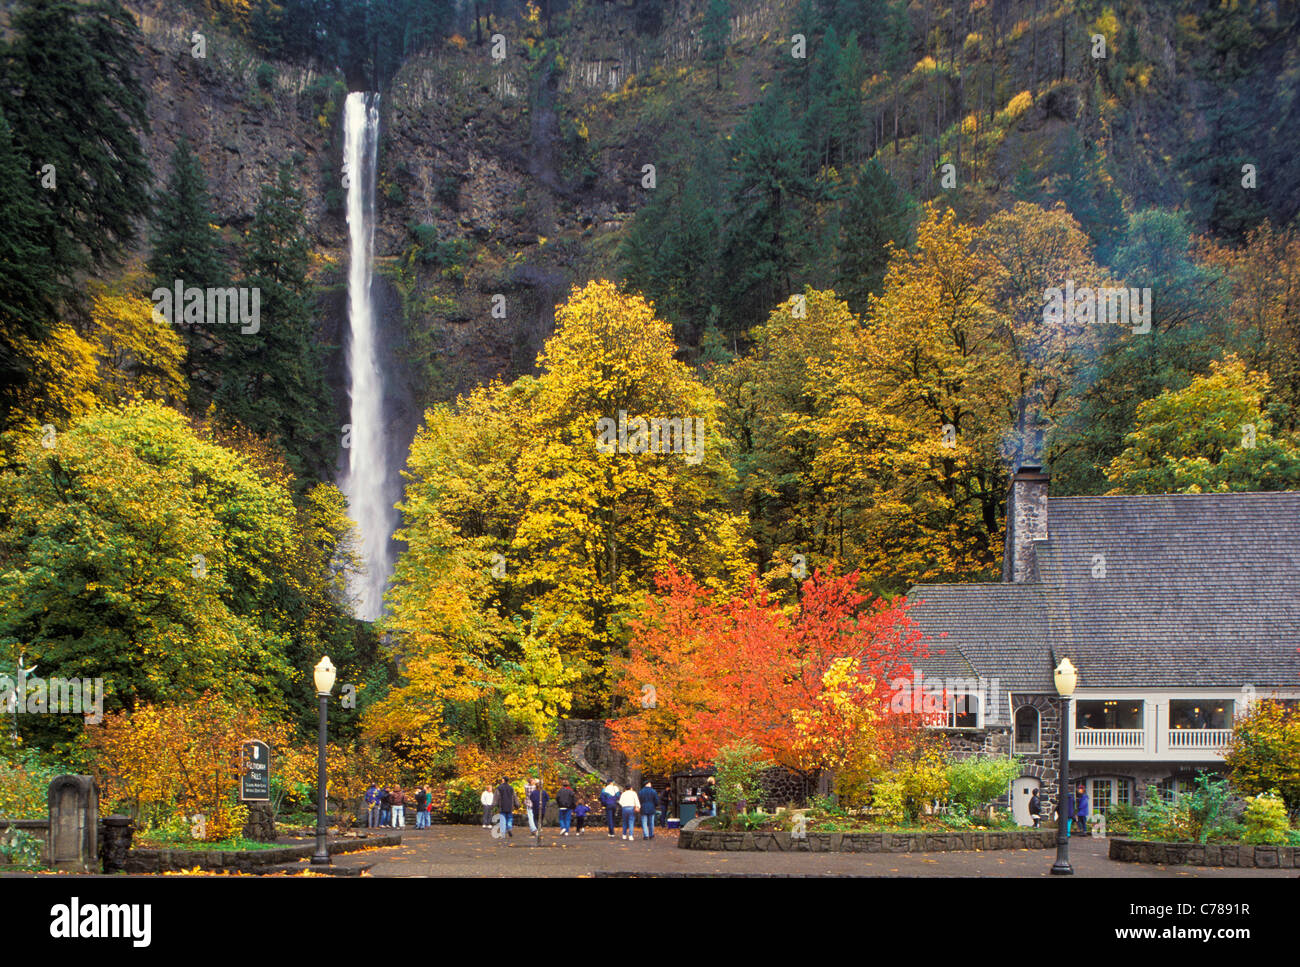 Chutes de Multnomah et Lodge avec des arbres dans la couleur de l'automne ; Columbia River Gorge National Scenic Area, Oregon. Banque D'Images